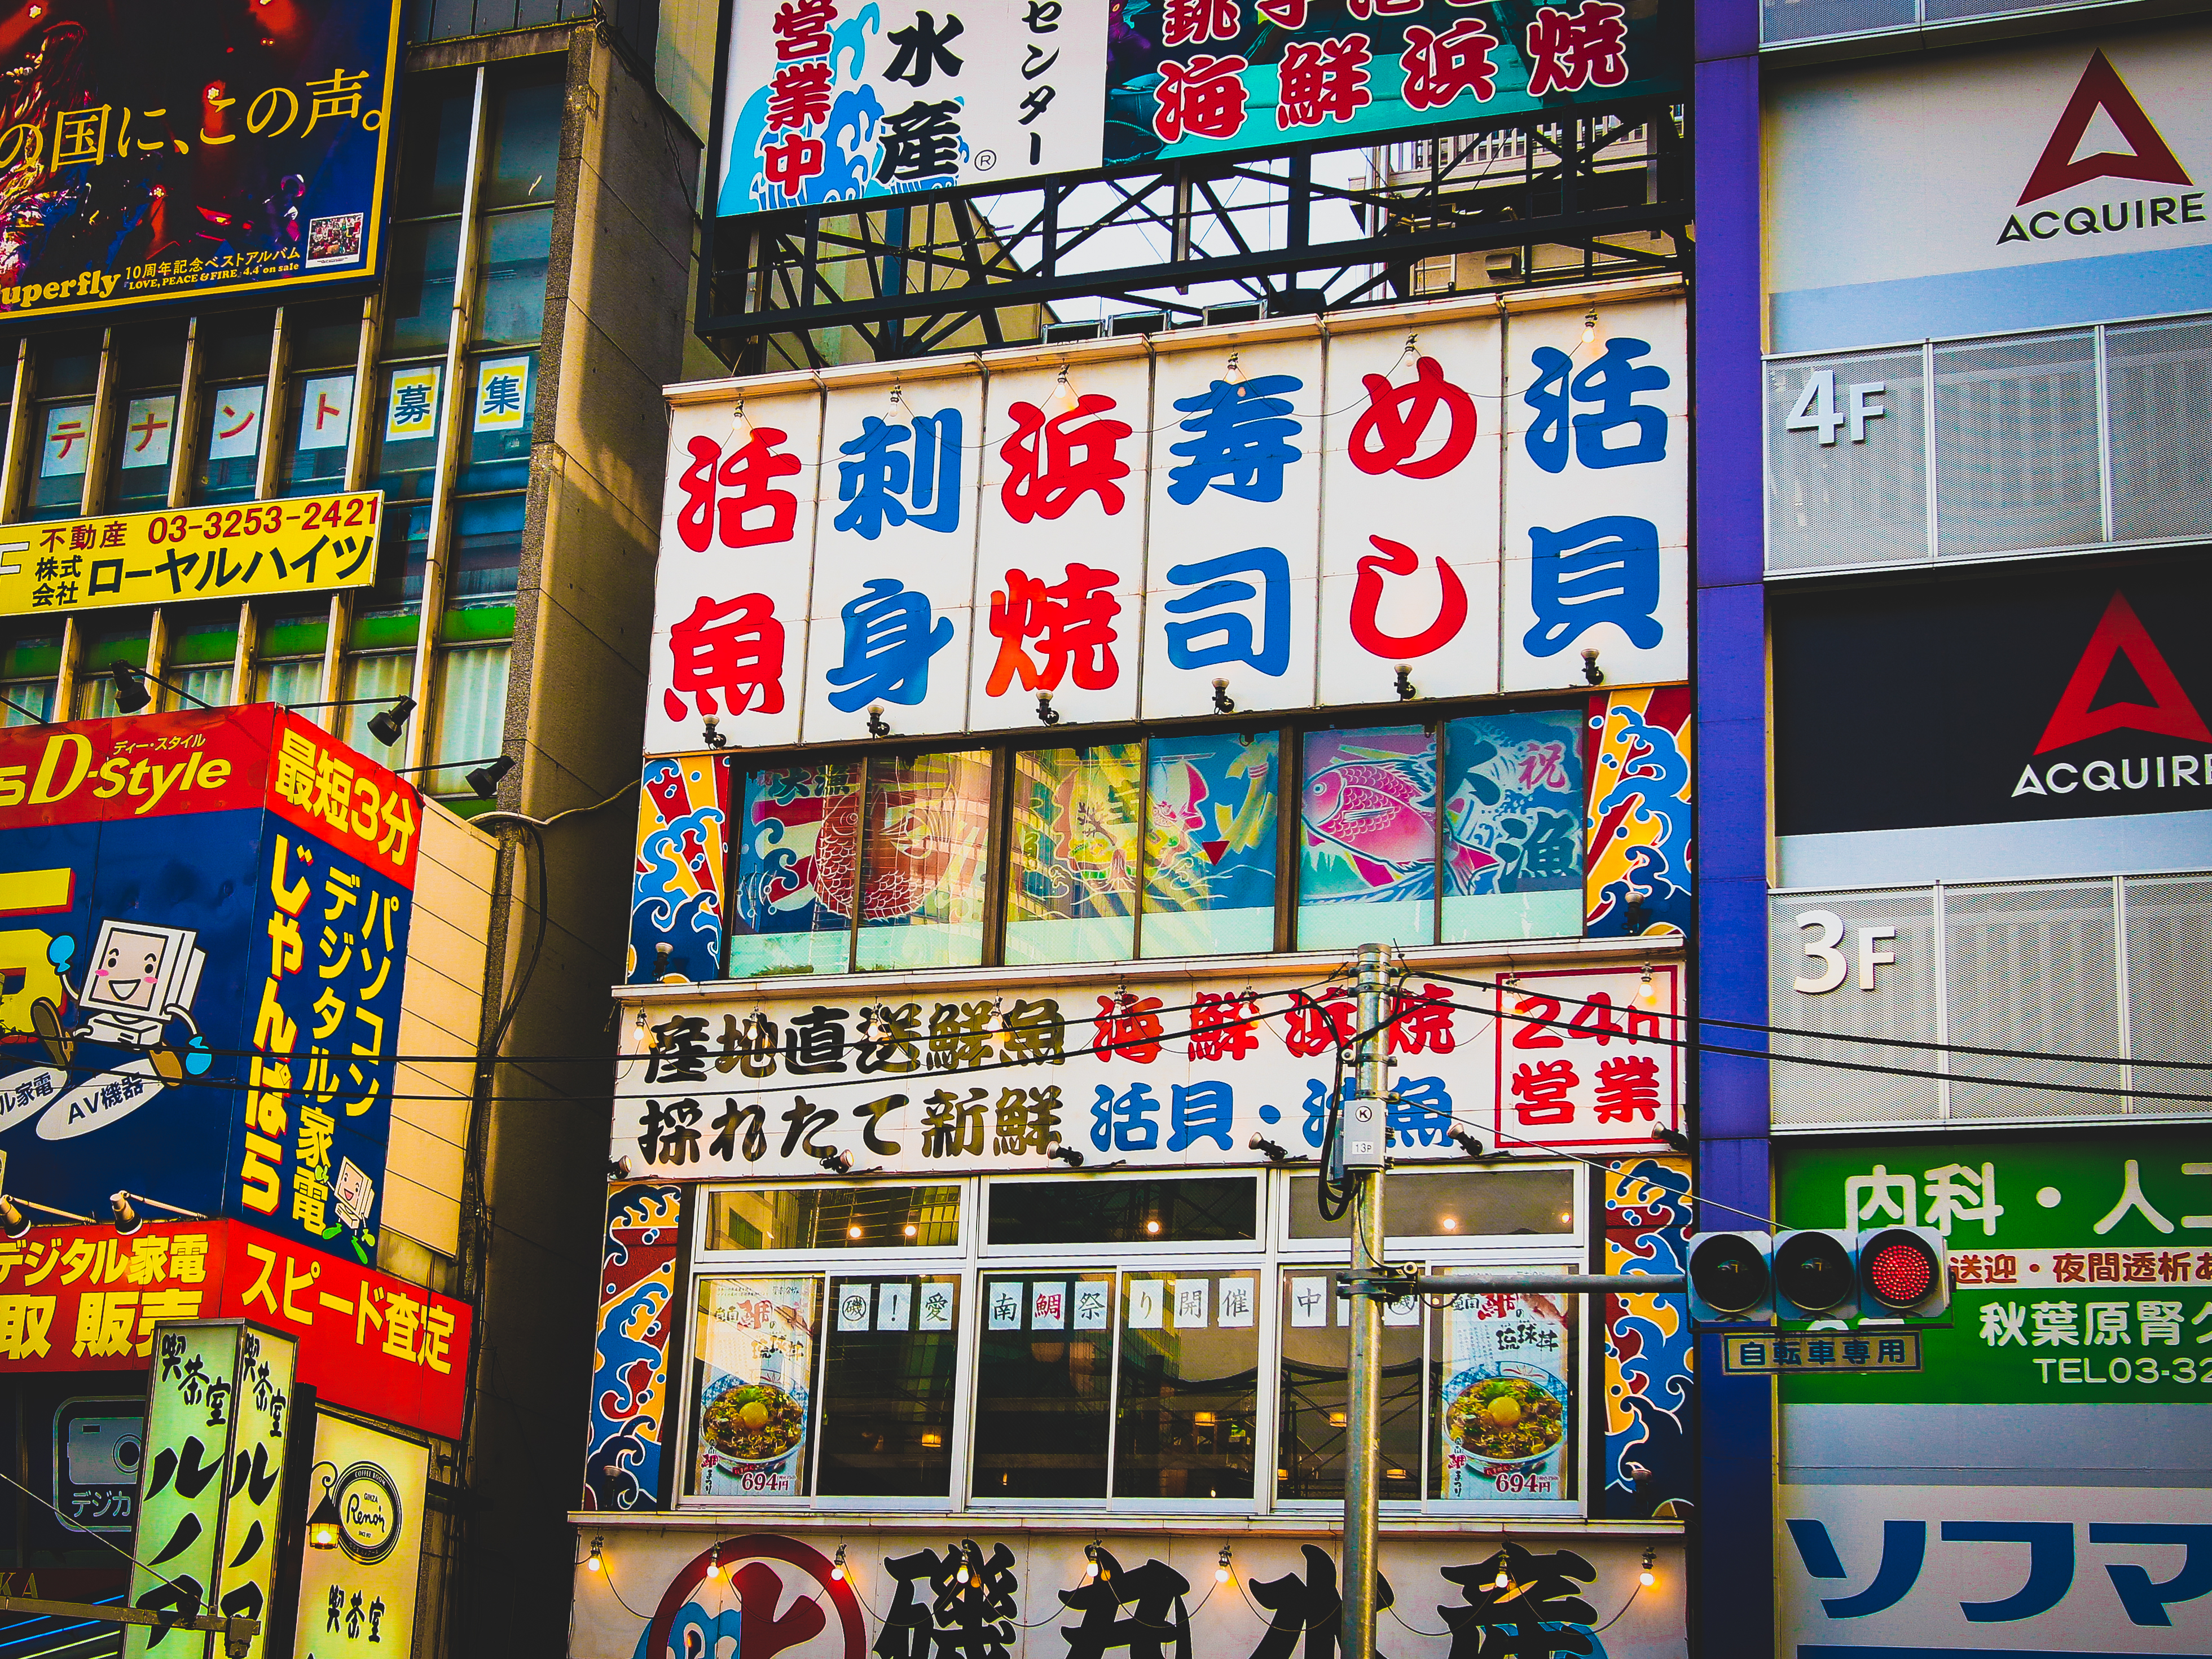 Akihabara Wallpapers